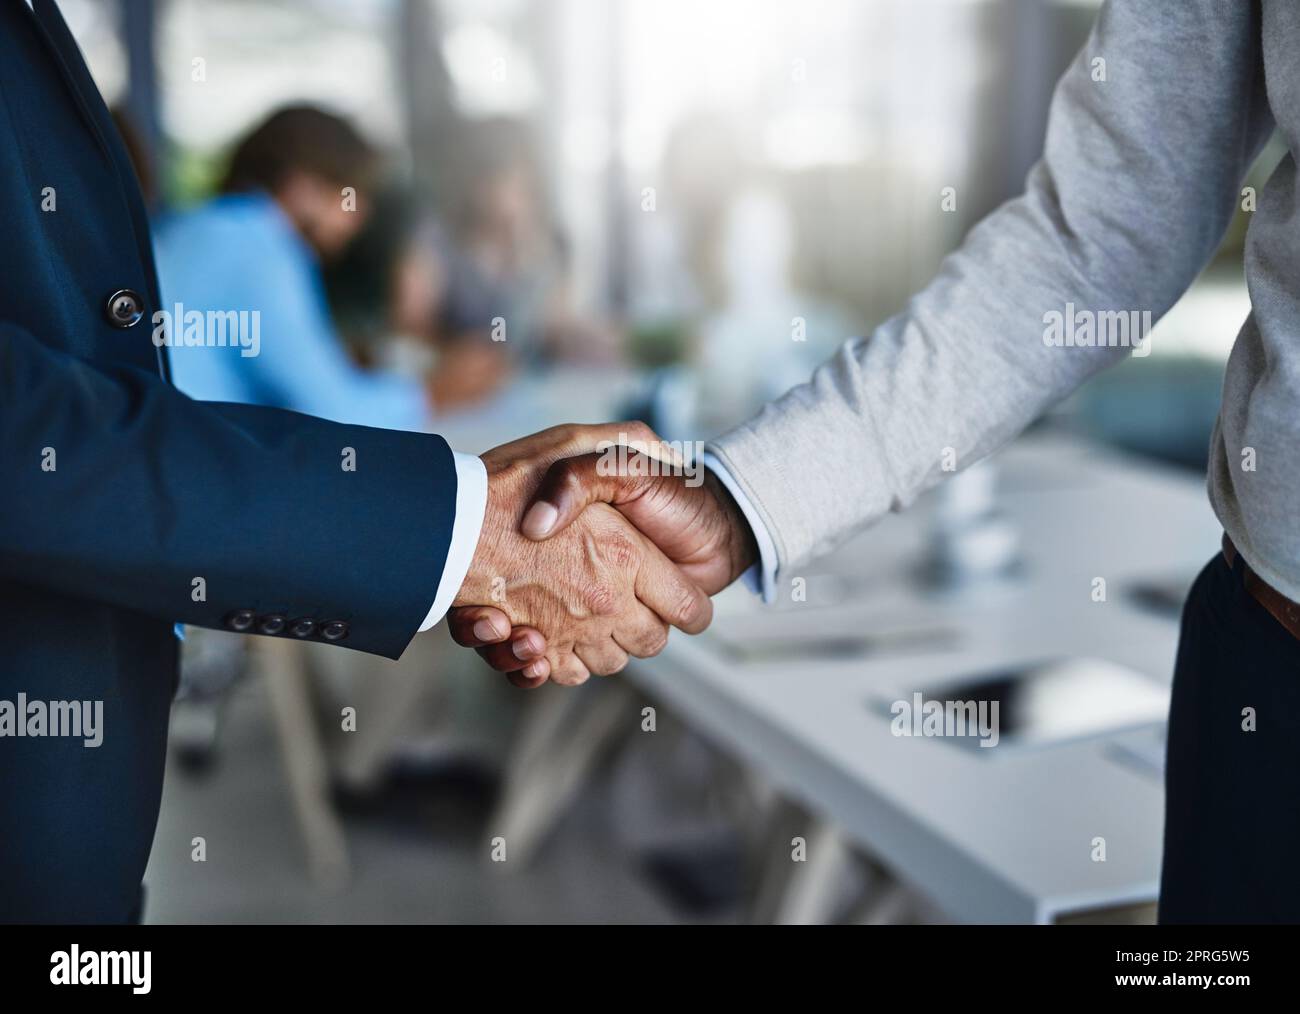 Pflege solider Geschäftsbeziehungen mit soliden Verhandlungsgeschick. Zwei Geschäftsleute schütteln sich während eines Meetings bei der Arbeit die Hände. Stockfoto